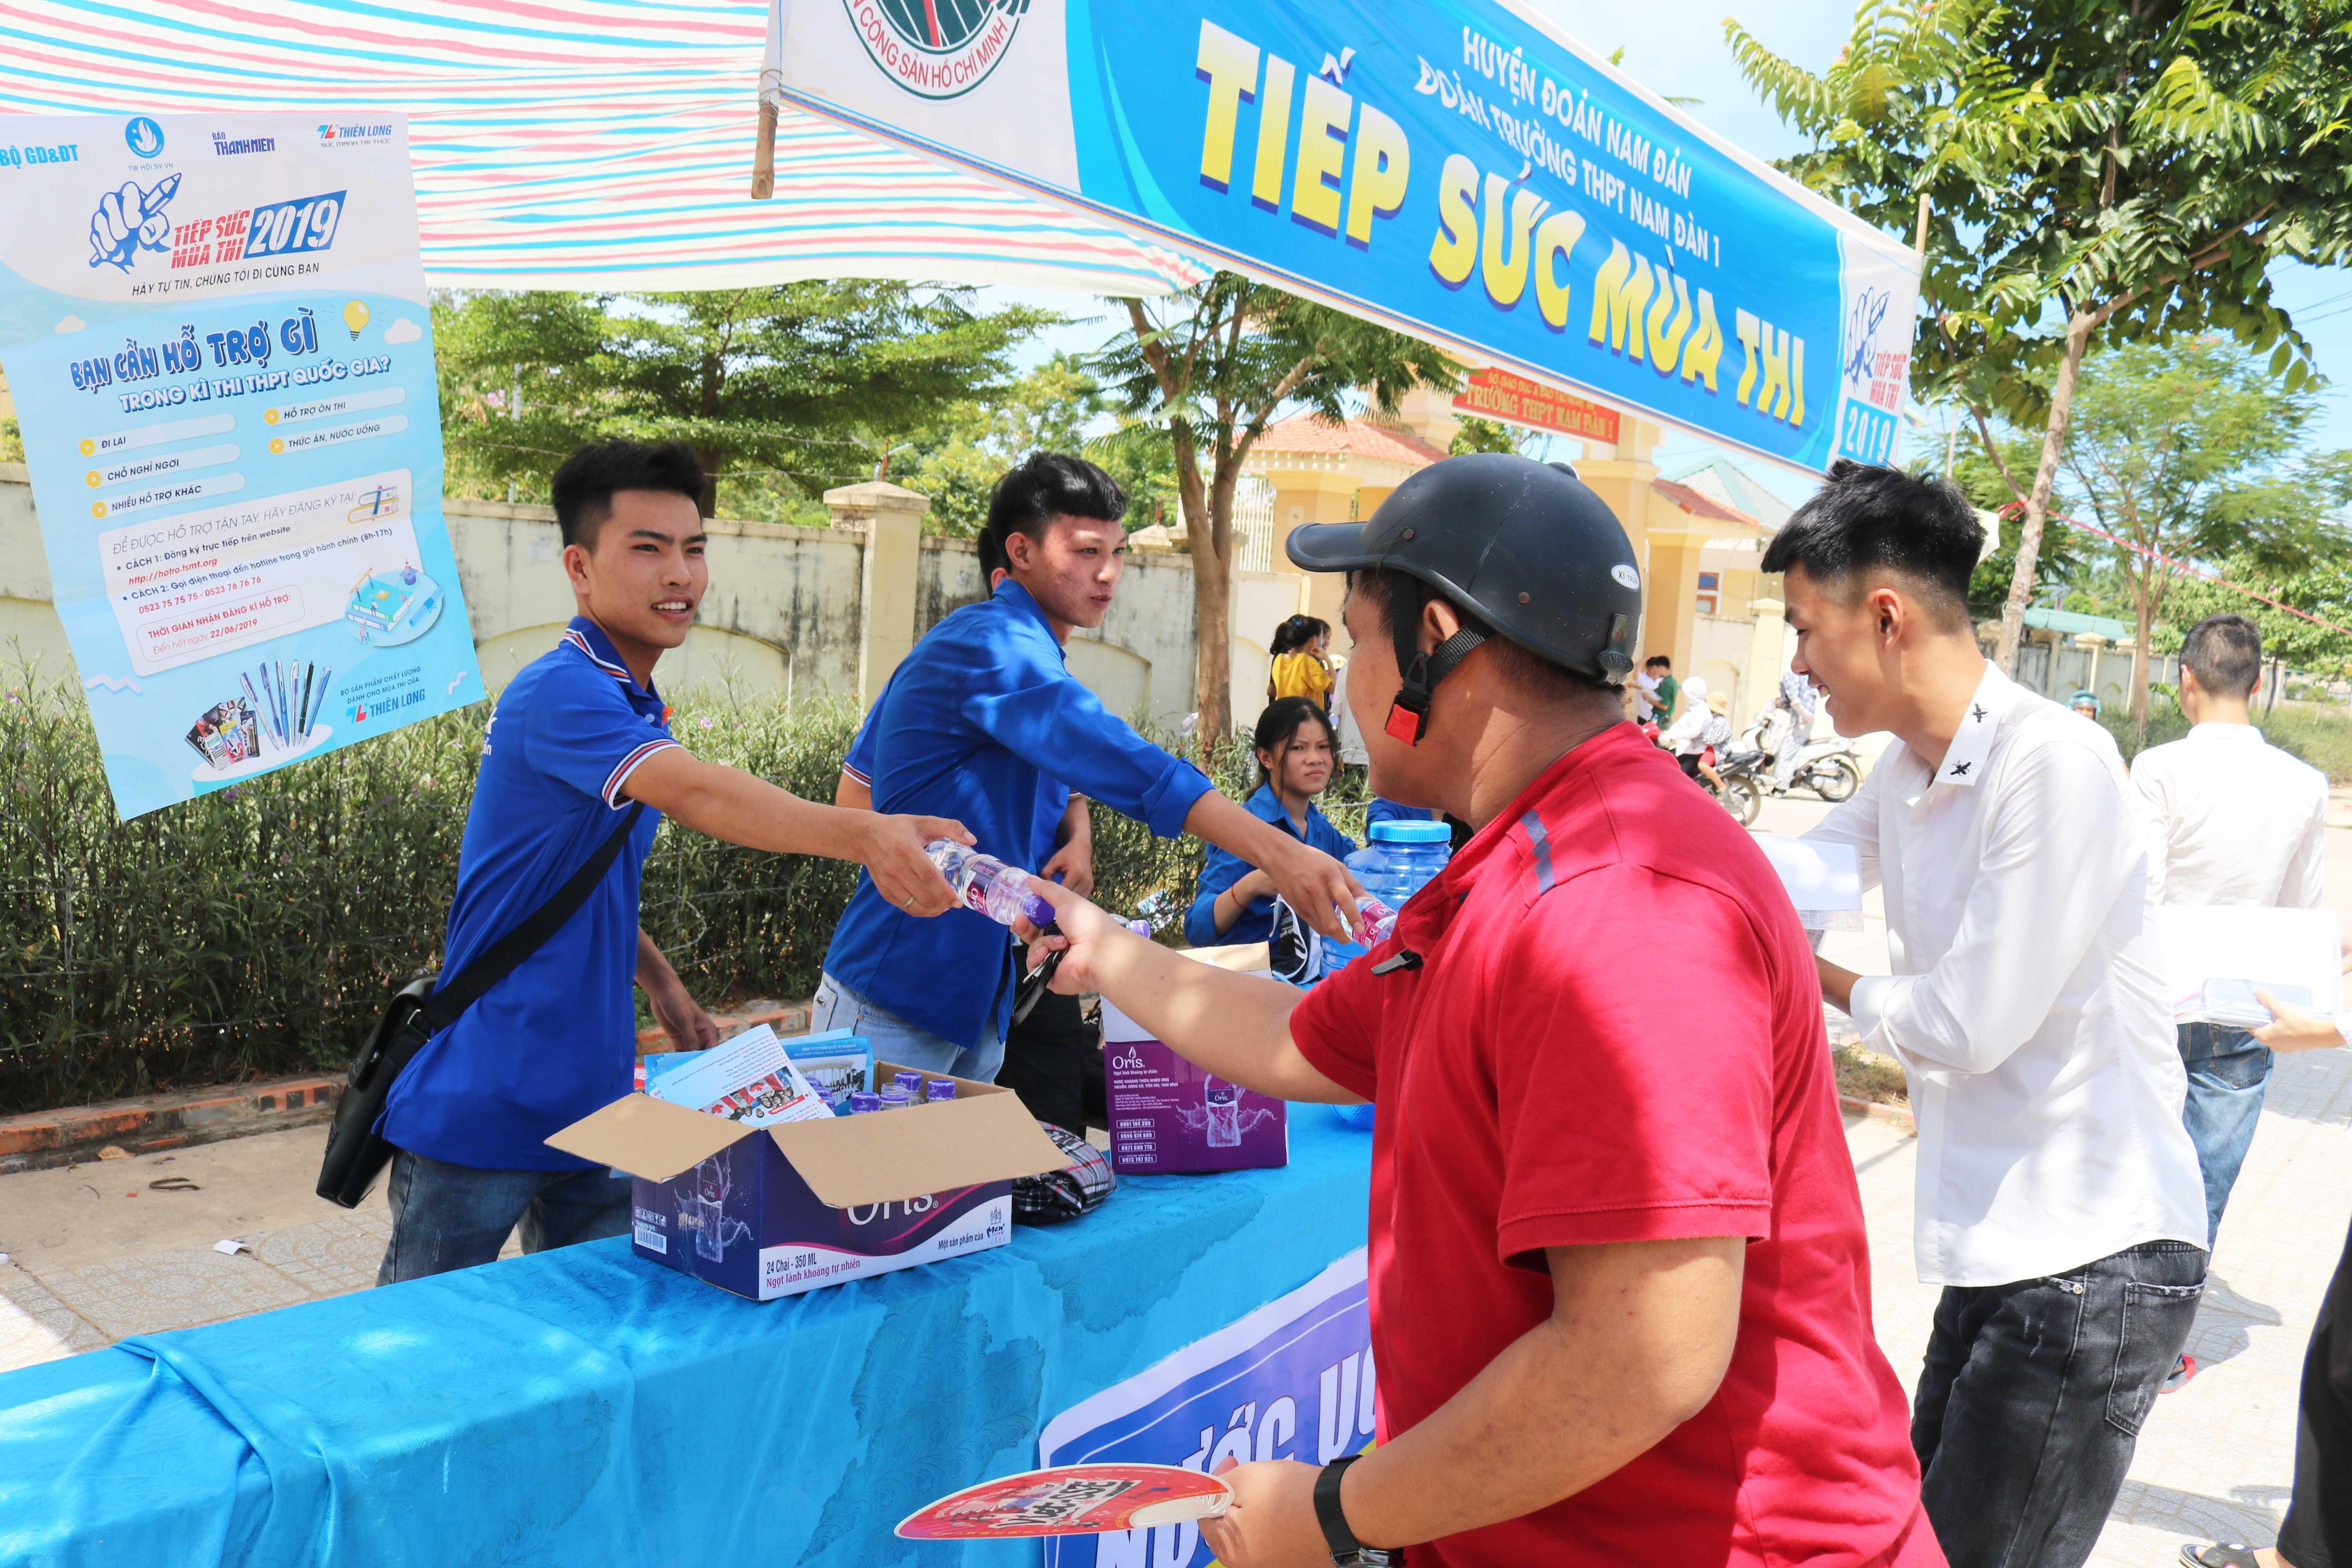 Chương trình cấp phát nước miễn phí do các tình nguyện viên tại điểm thi trường THPT Kim Liên, ảnh Huy Thư.